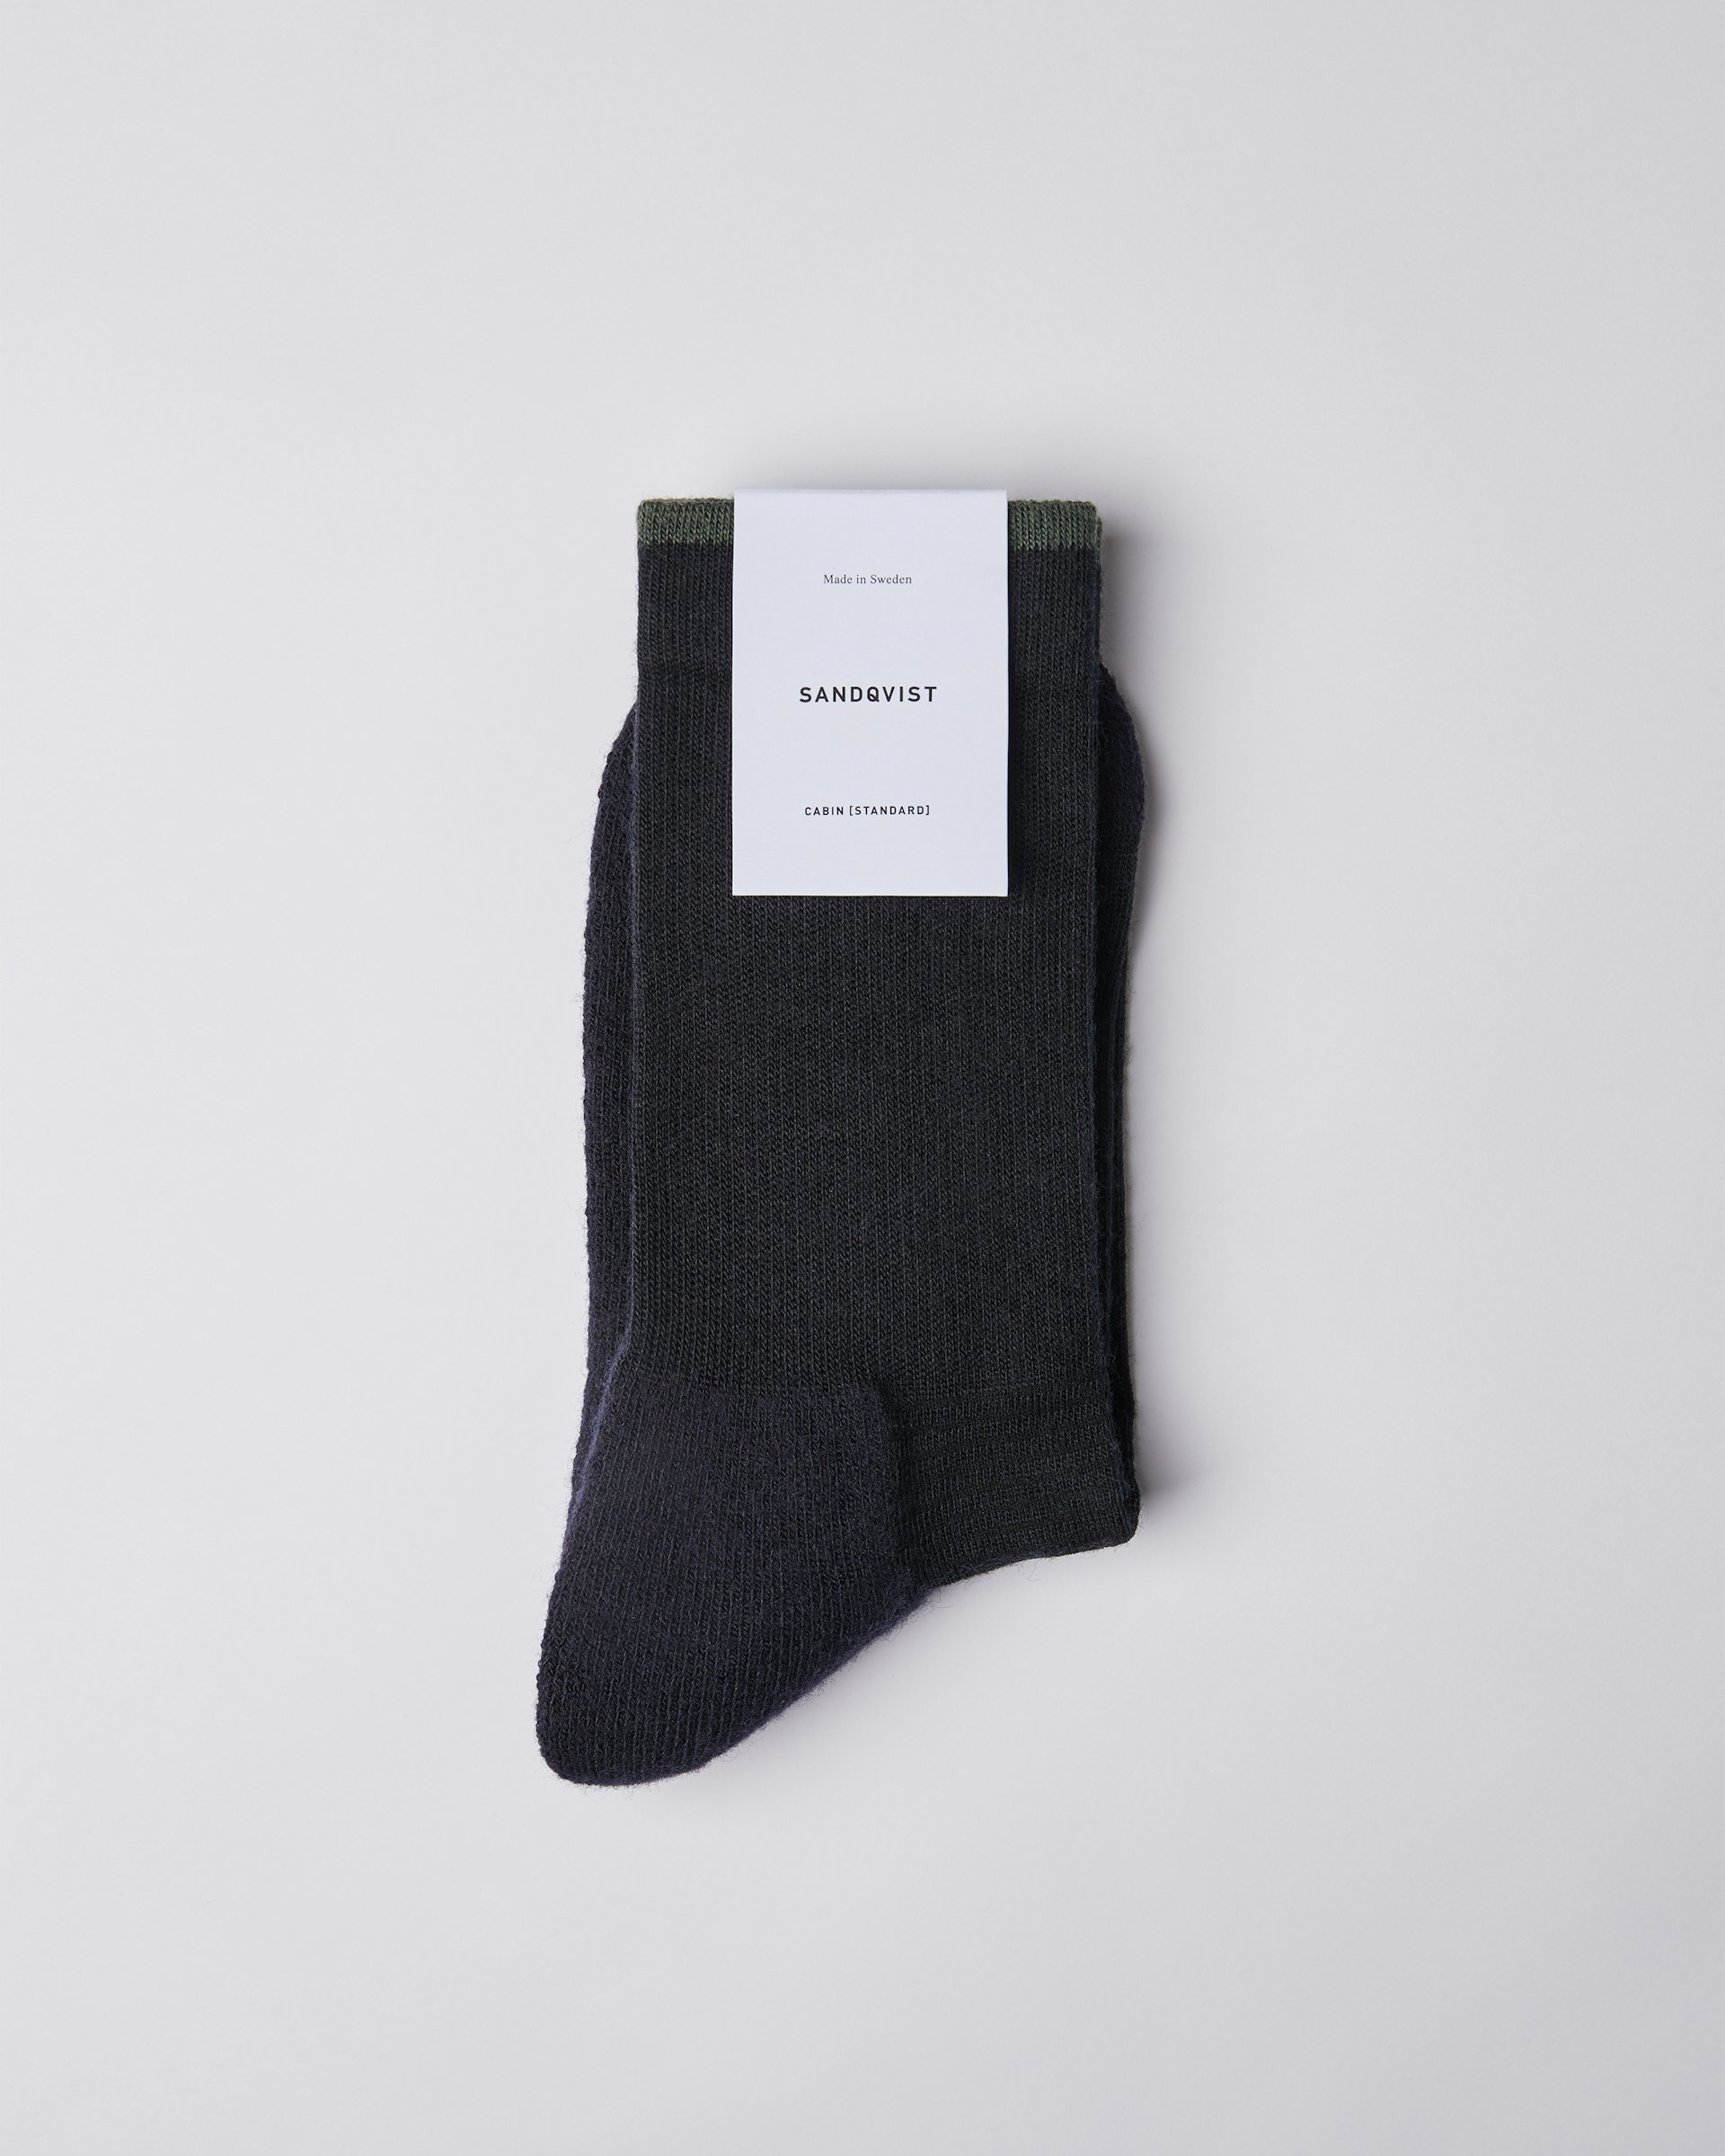 Wool Sock is in color black & green (1 of 3)